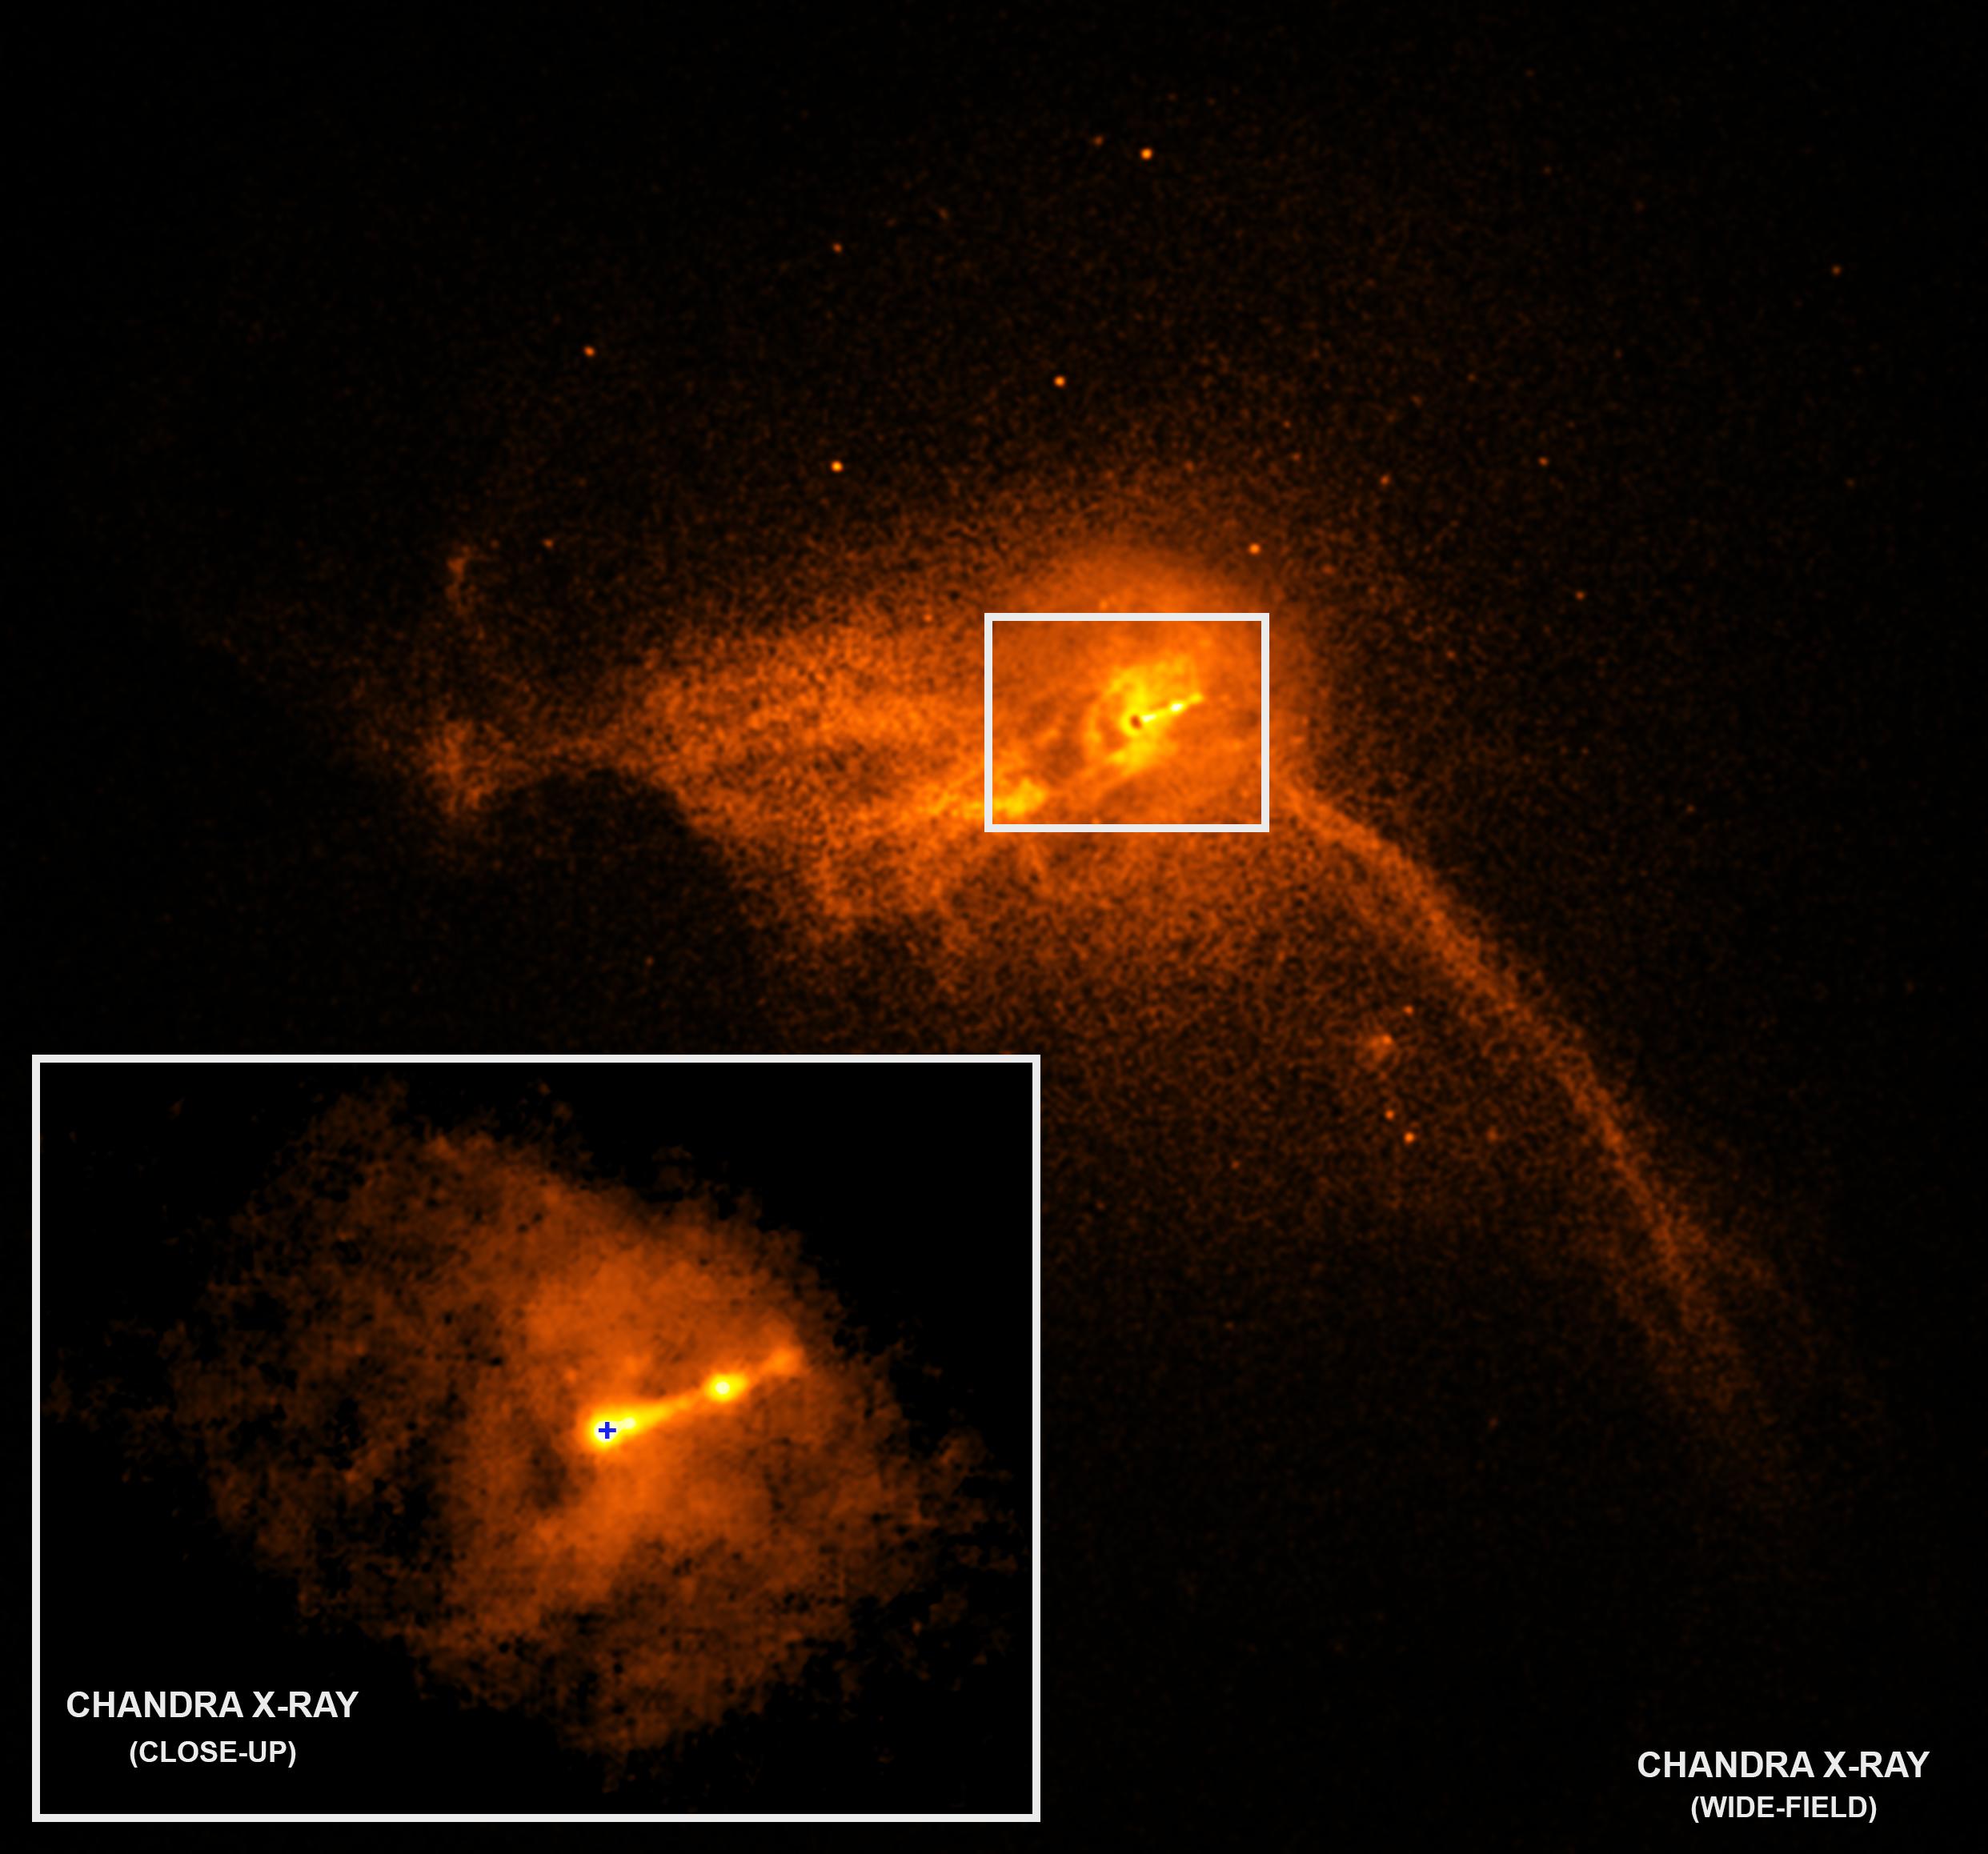 The Black Hole from Chandra's X-Ray